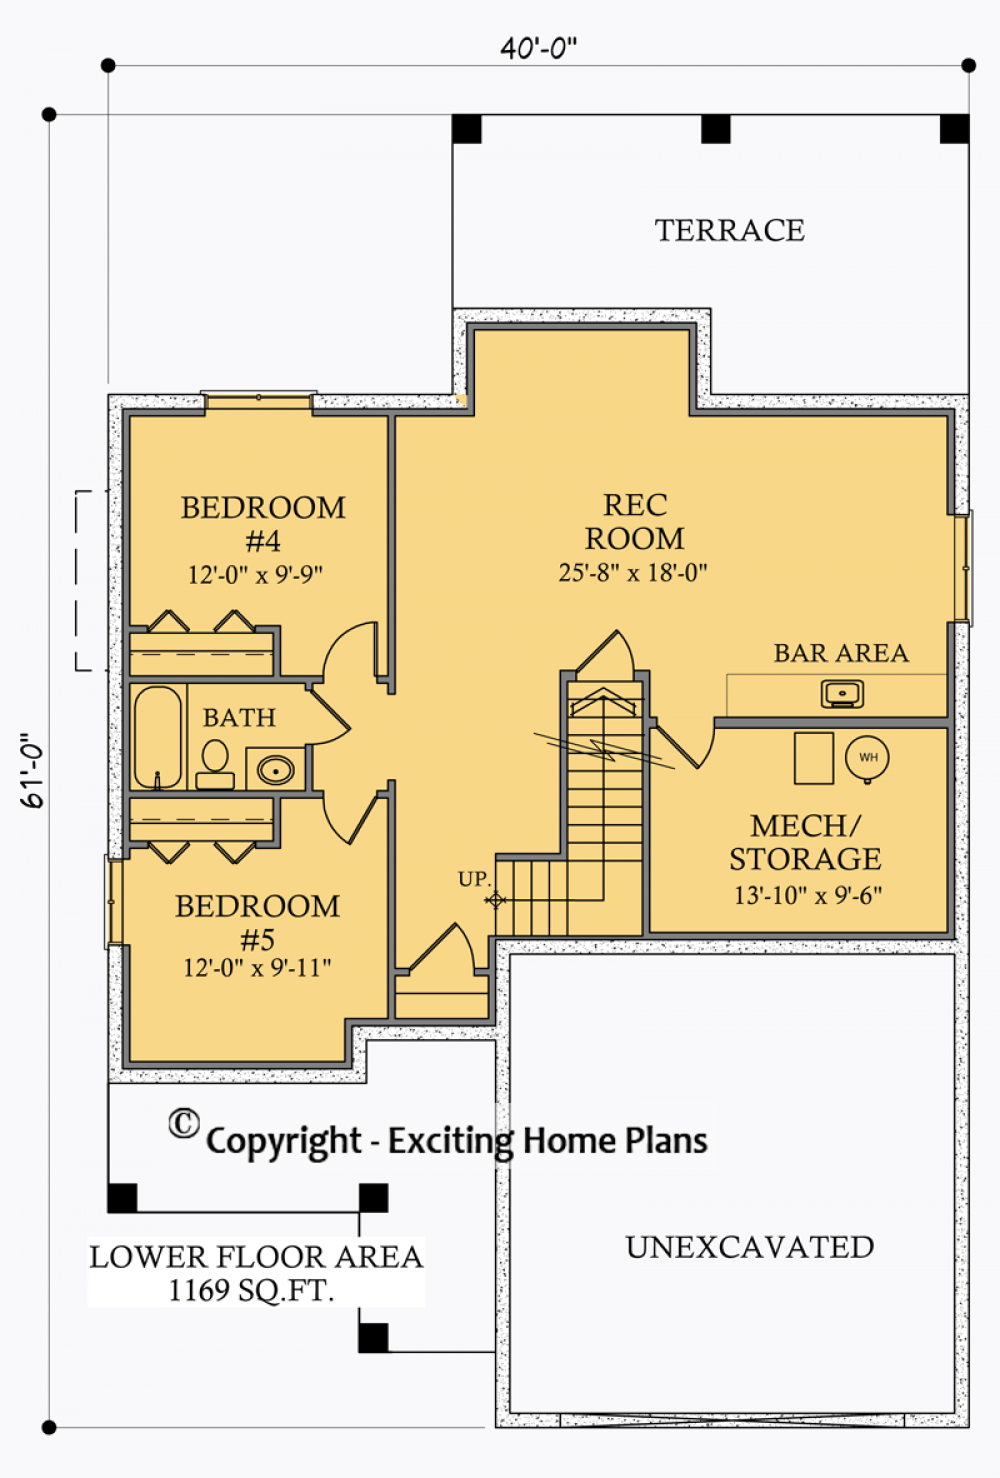 House Plan E1025-10 Lower Floor Plan